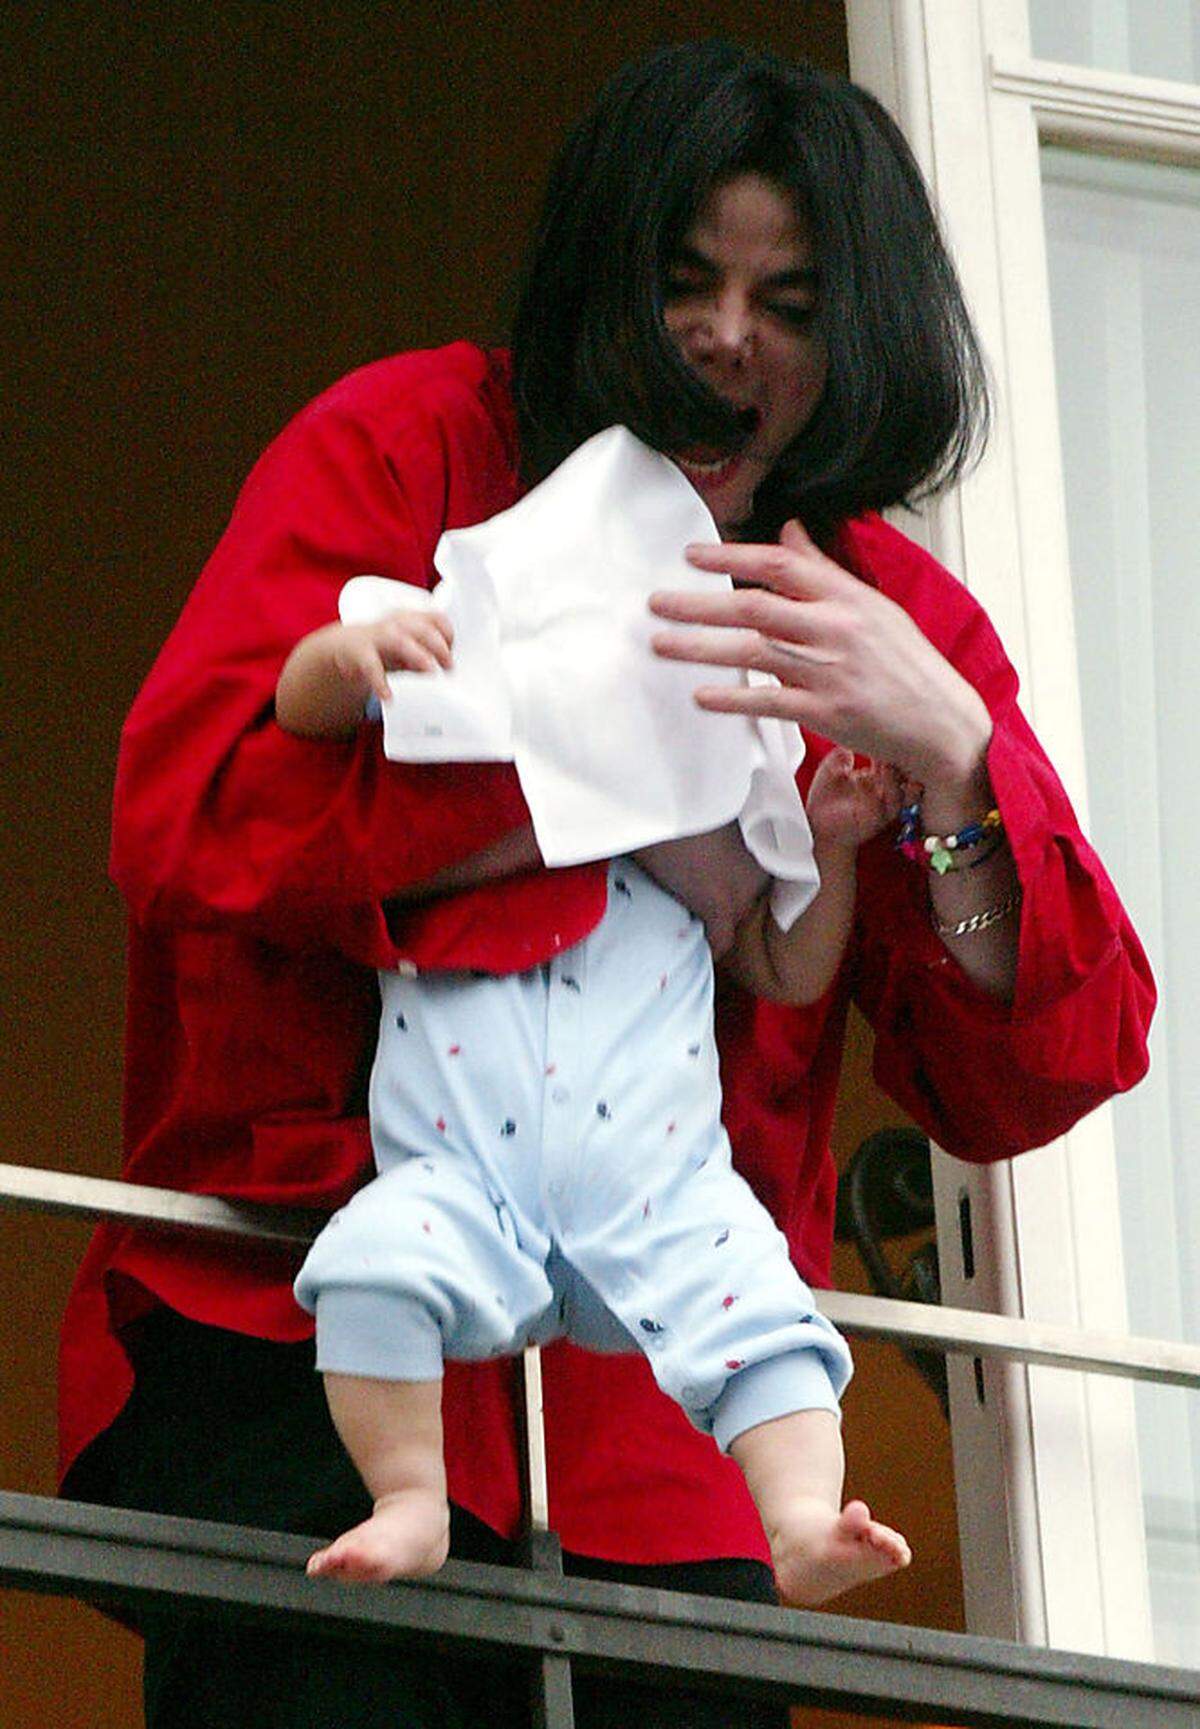 Allred widmete sich auch dem Popstar Michael Jackson. Nachdem der Musiker seinen neun Monate alten Sohn Blanket über den Balkon des Hotel Adlon in Berlin gehalten hatte (im Bild), meldete Allred den Fall bei der Familienbehörde in Los Angeles. Schon 1993 hatte sie einen Jungen vertreten, der Jackson des sexuellen Missbrauchs beschuldigt hatte.